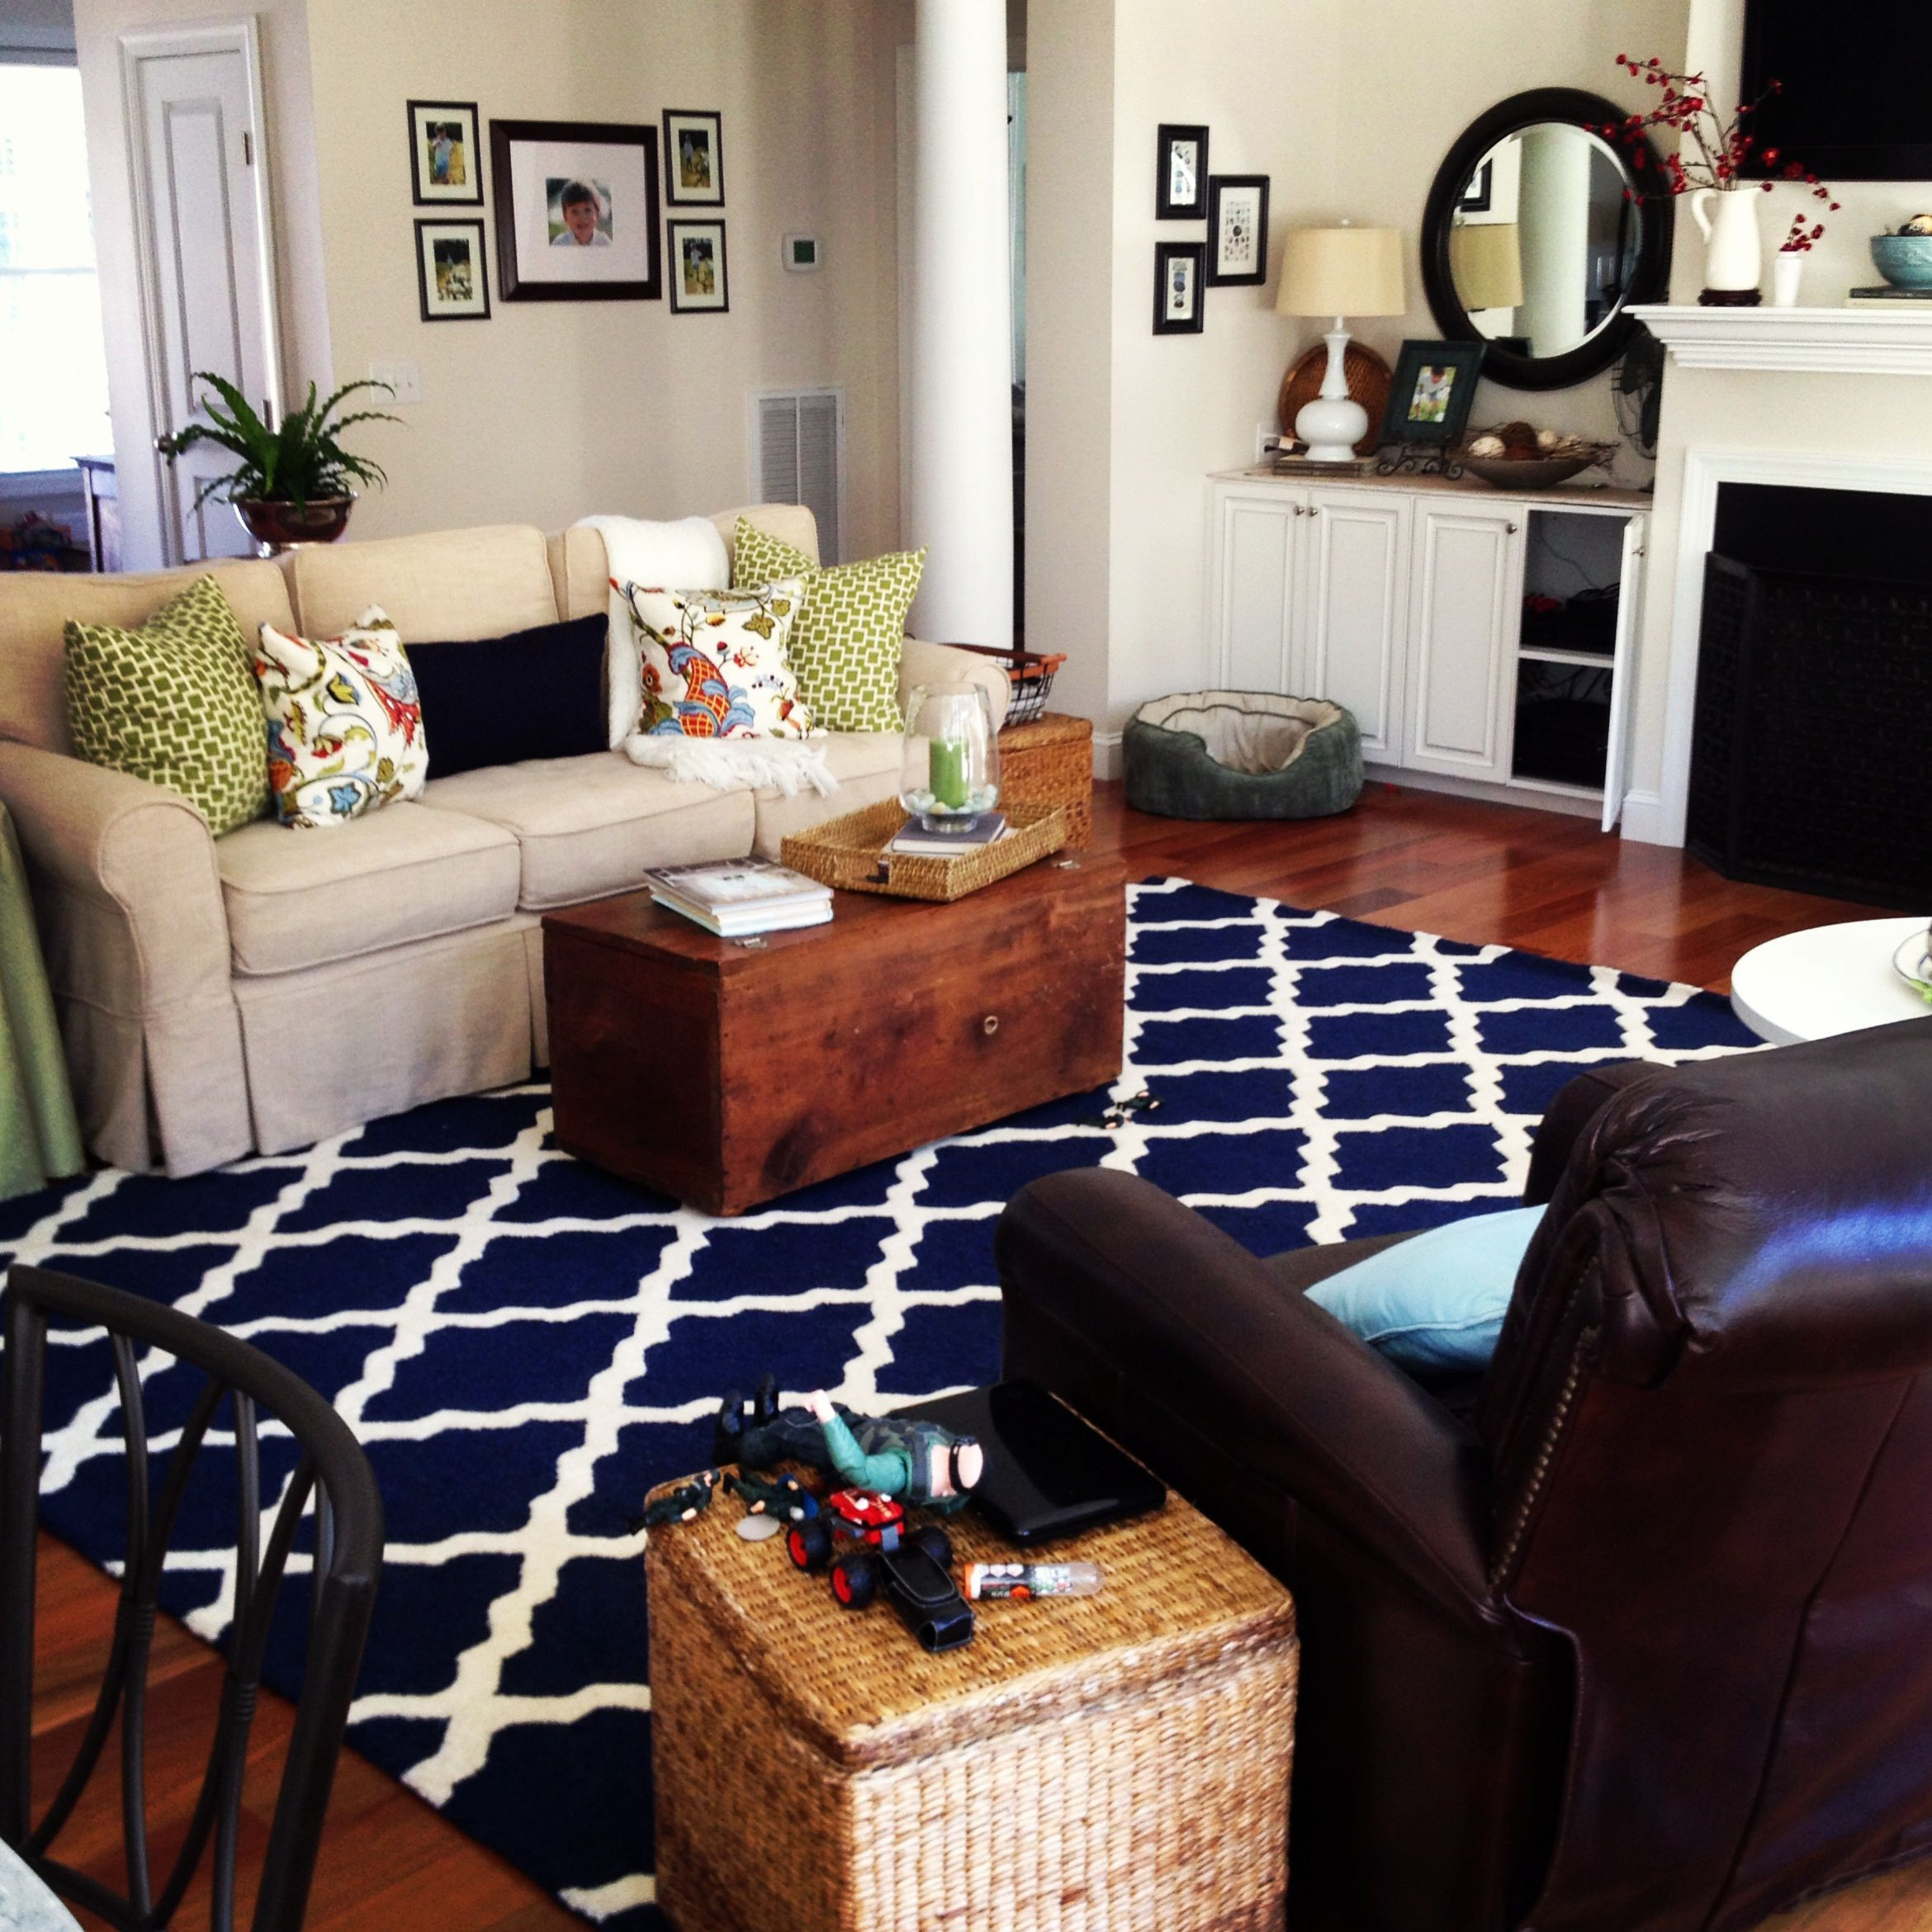 Best Living Room Rugs
 The 25 best Living room rugs ideas on Pinterest